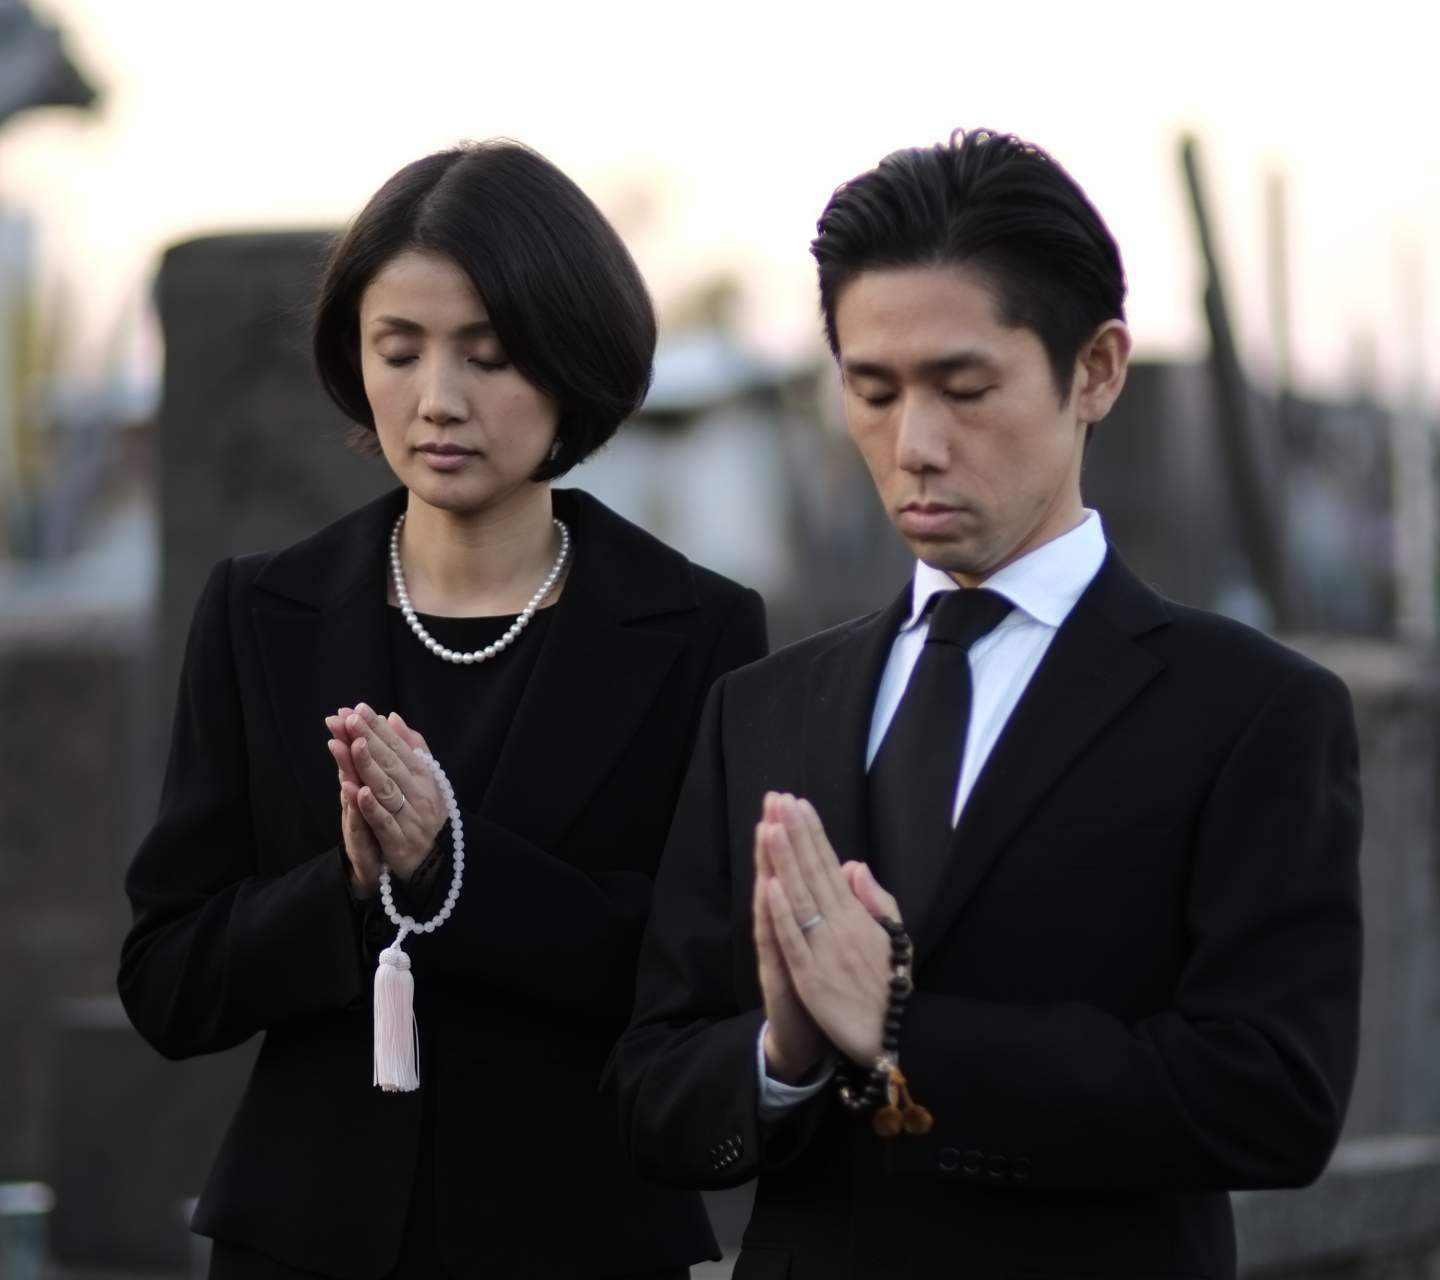 東京都における墓地不足から納骨堂需要が増加